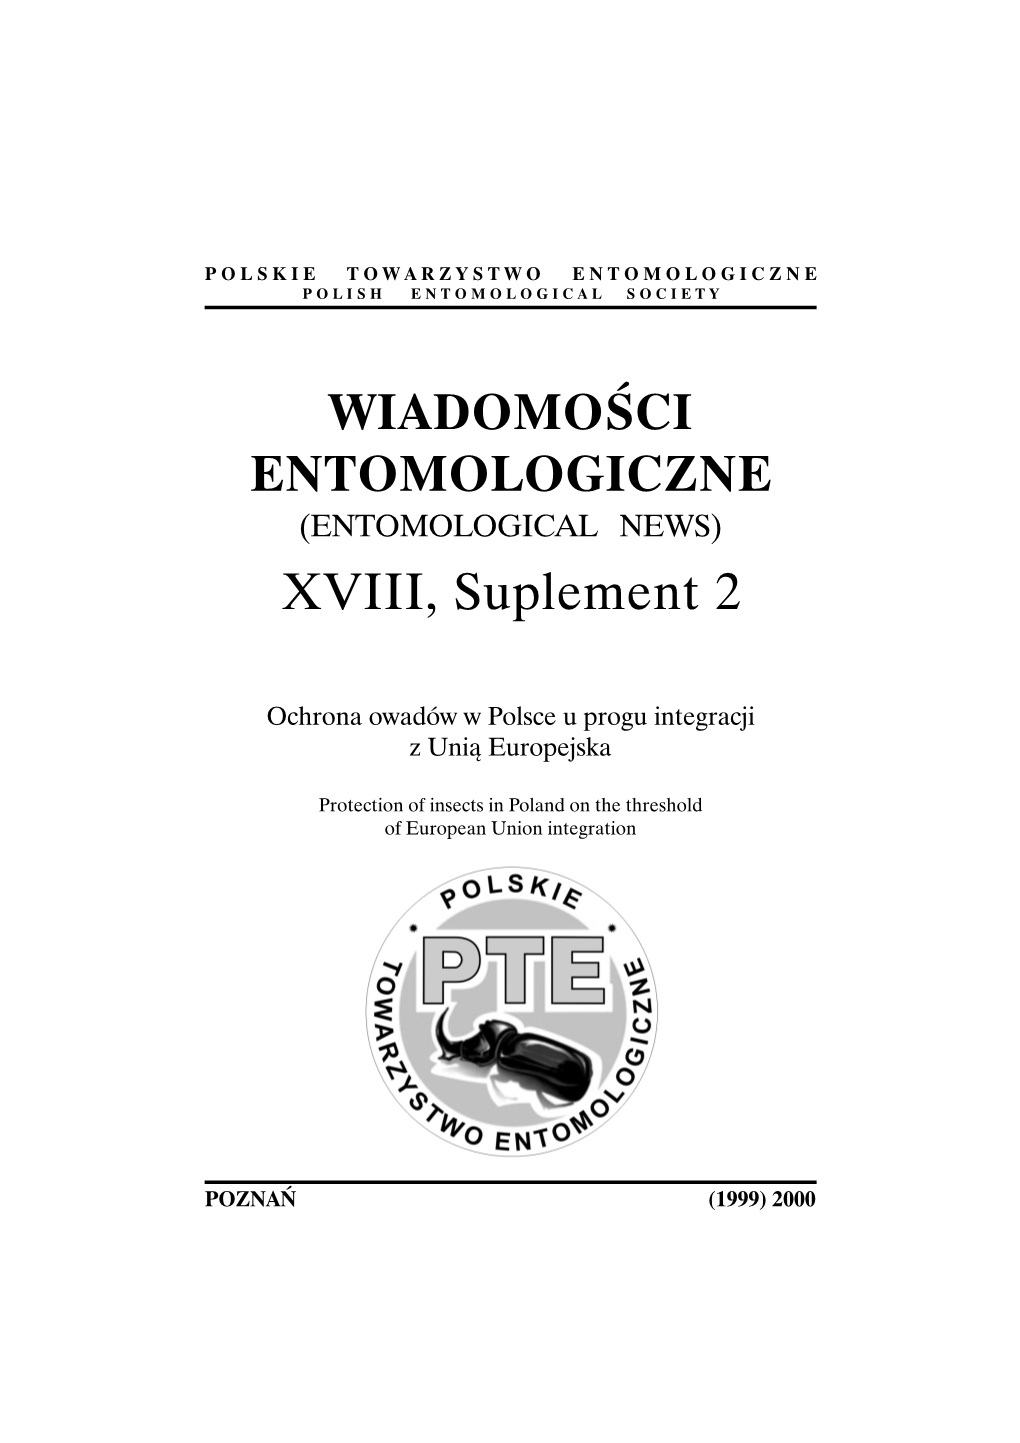 WIADOMOŚCI ENTOMOLOGICZNE XVIII, Suplement 2